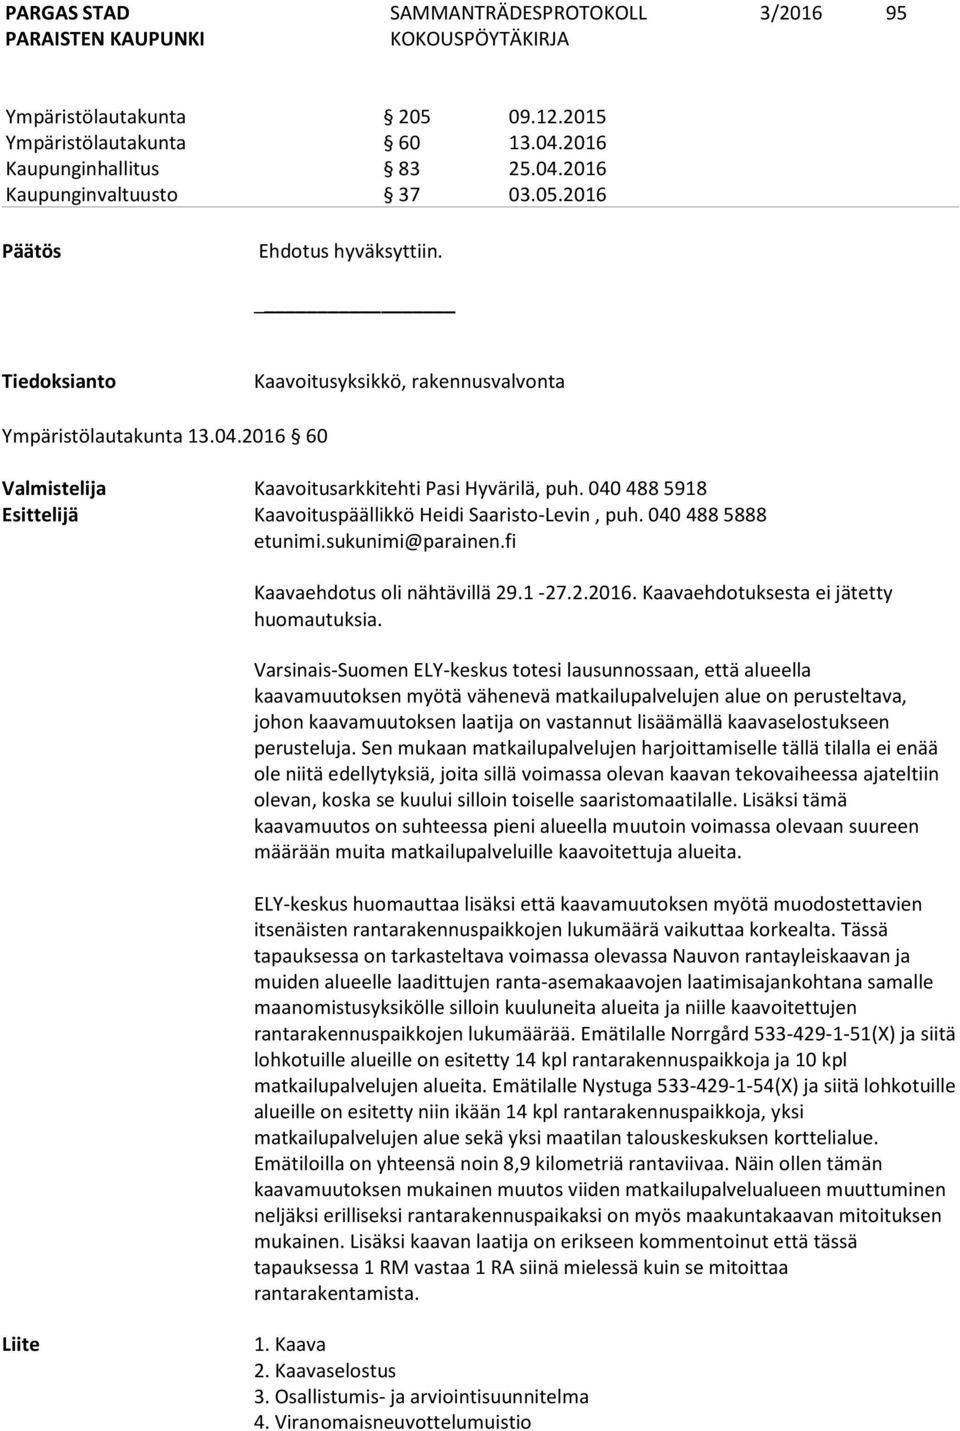 040 488 5918 Esittelijä Kaavoituspäällikkö Heidi Saaristo-Levin, puh. 040 488 5888 etunimi.sukunimi@parainen.fi Kaavaehdotus oli nähtävillä 29.1-27.2.2016. Kaavaehdotuksesta ei jätetty huomautuksia.